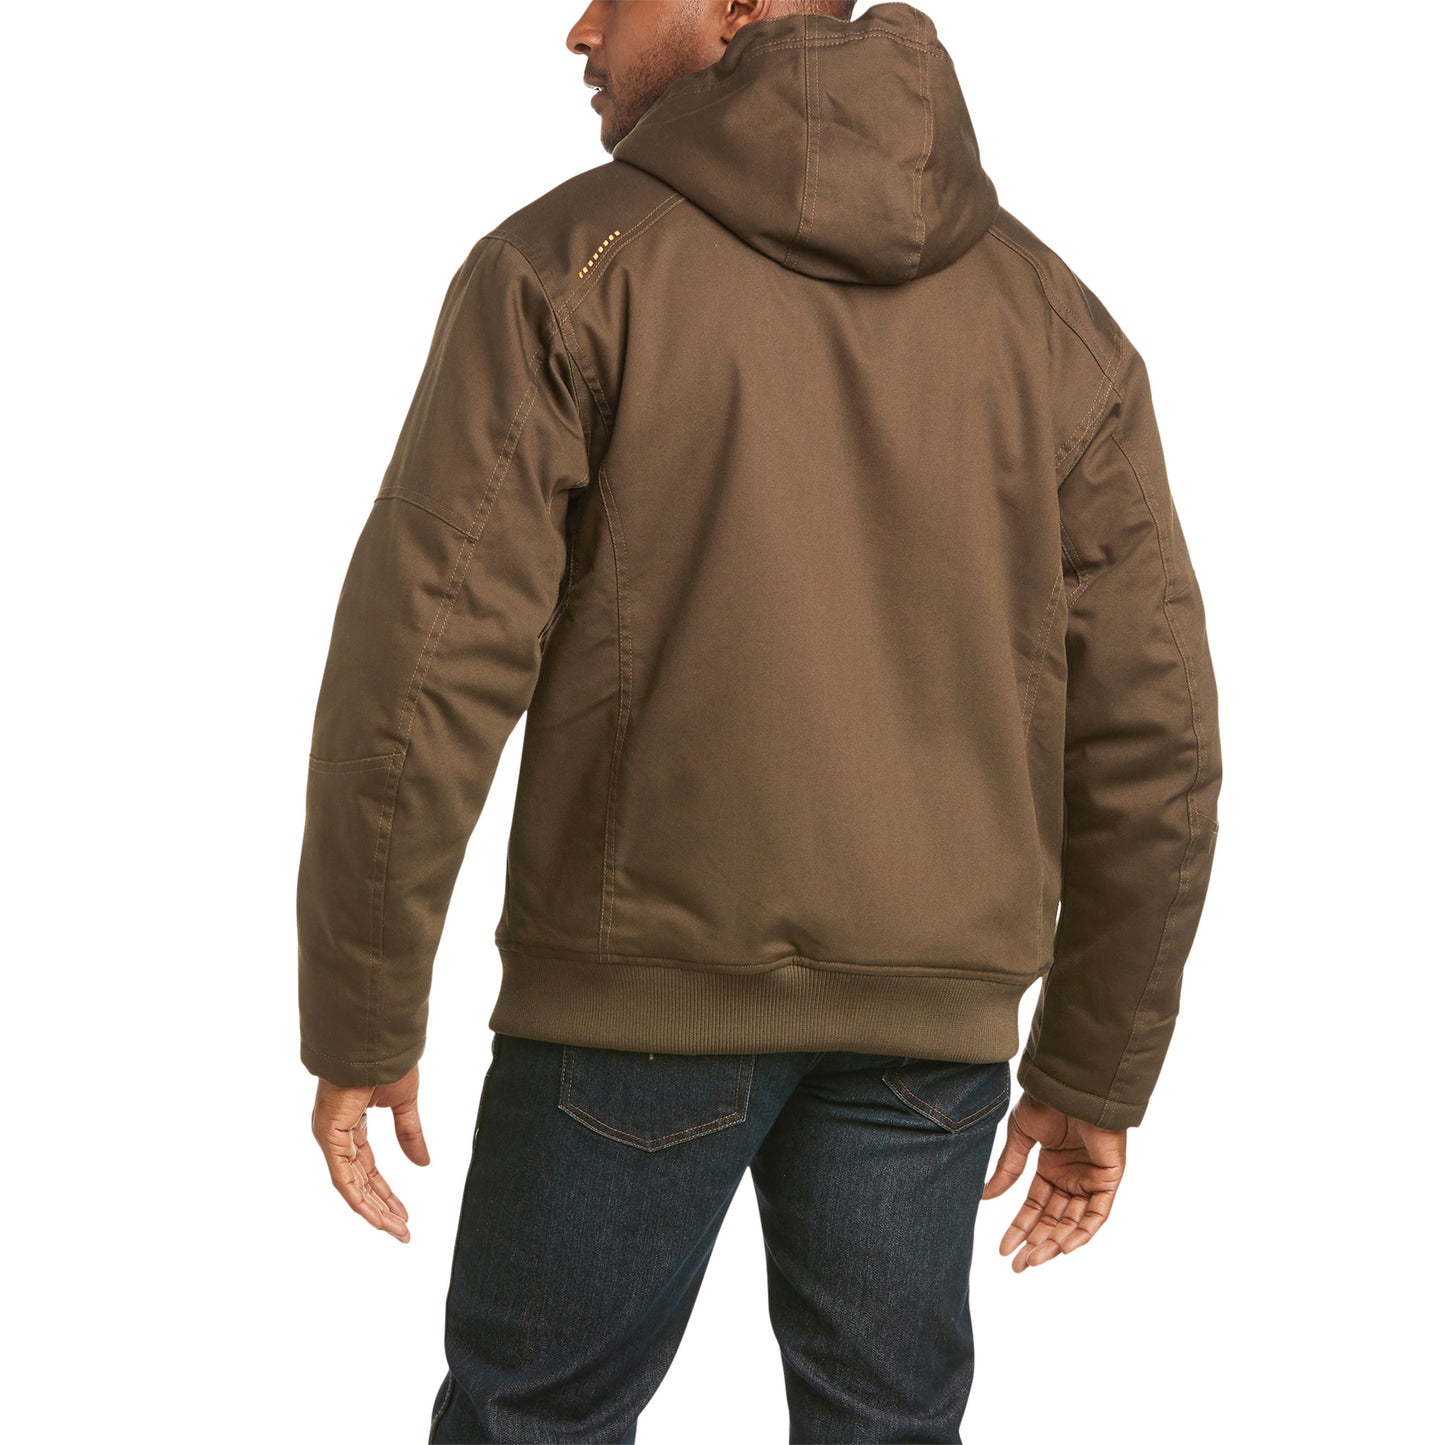 Ariat® Men's Rebar DuraCanvas Wren Brown Hooded Jacket 10027842